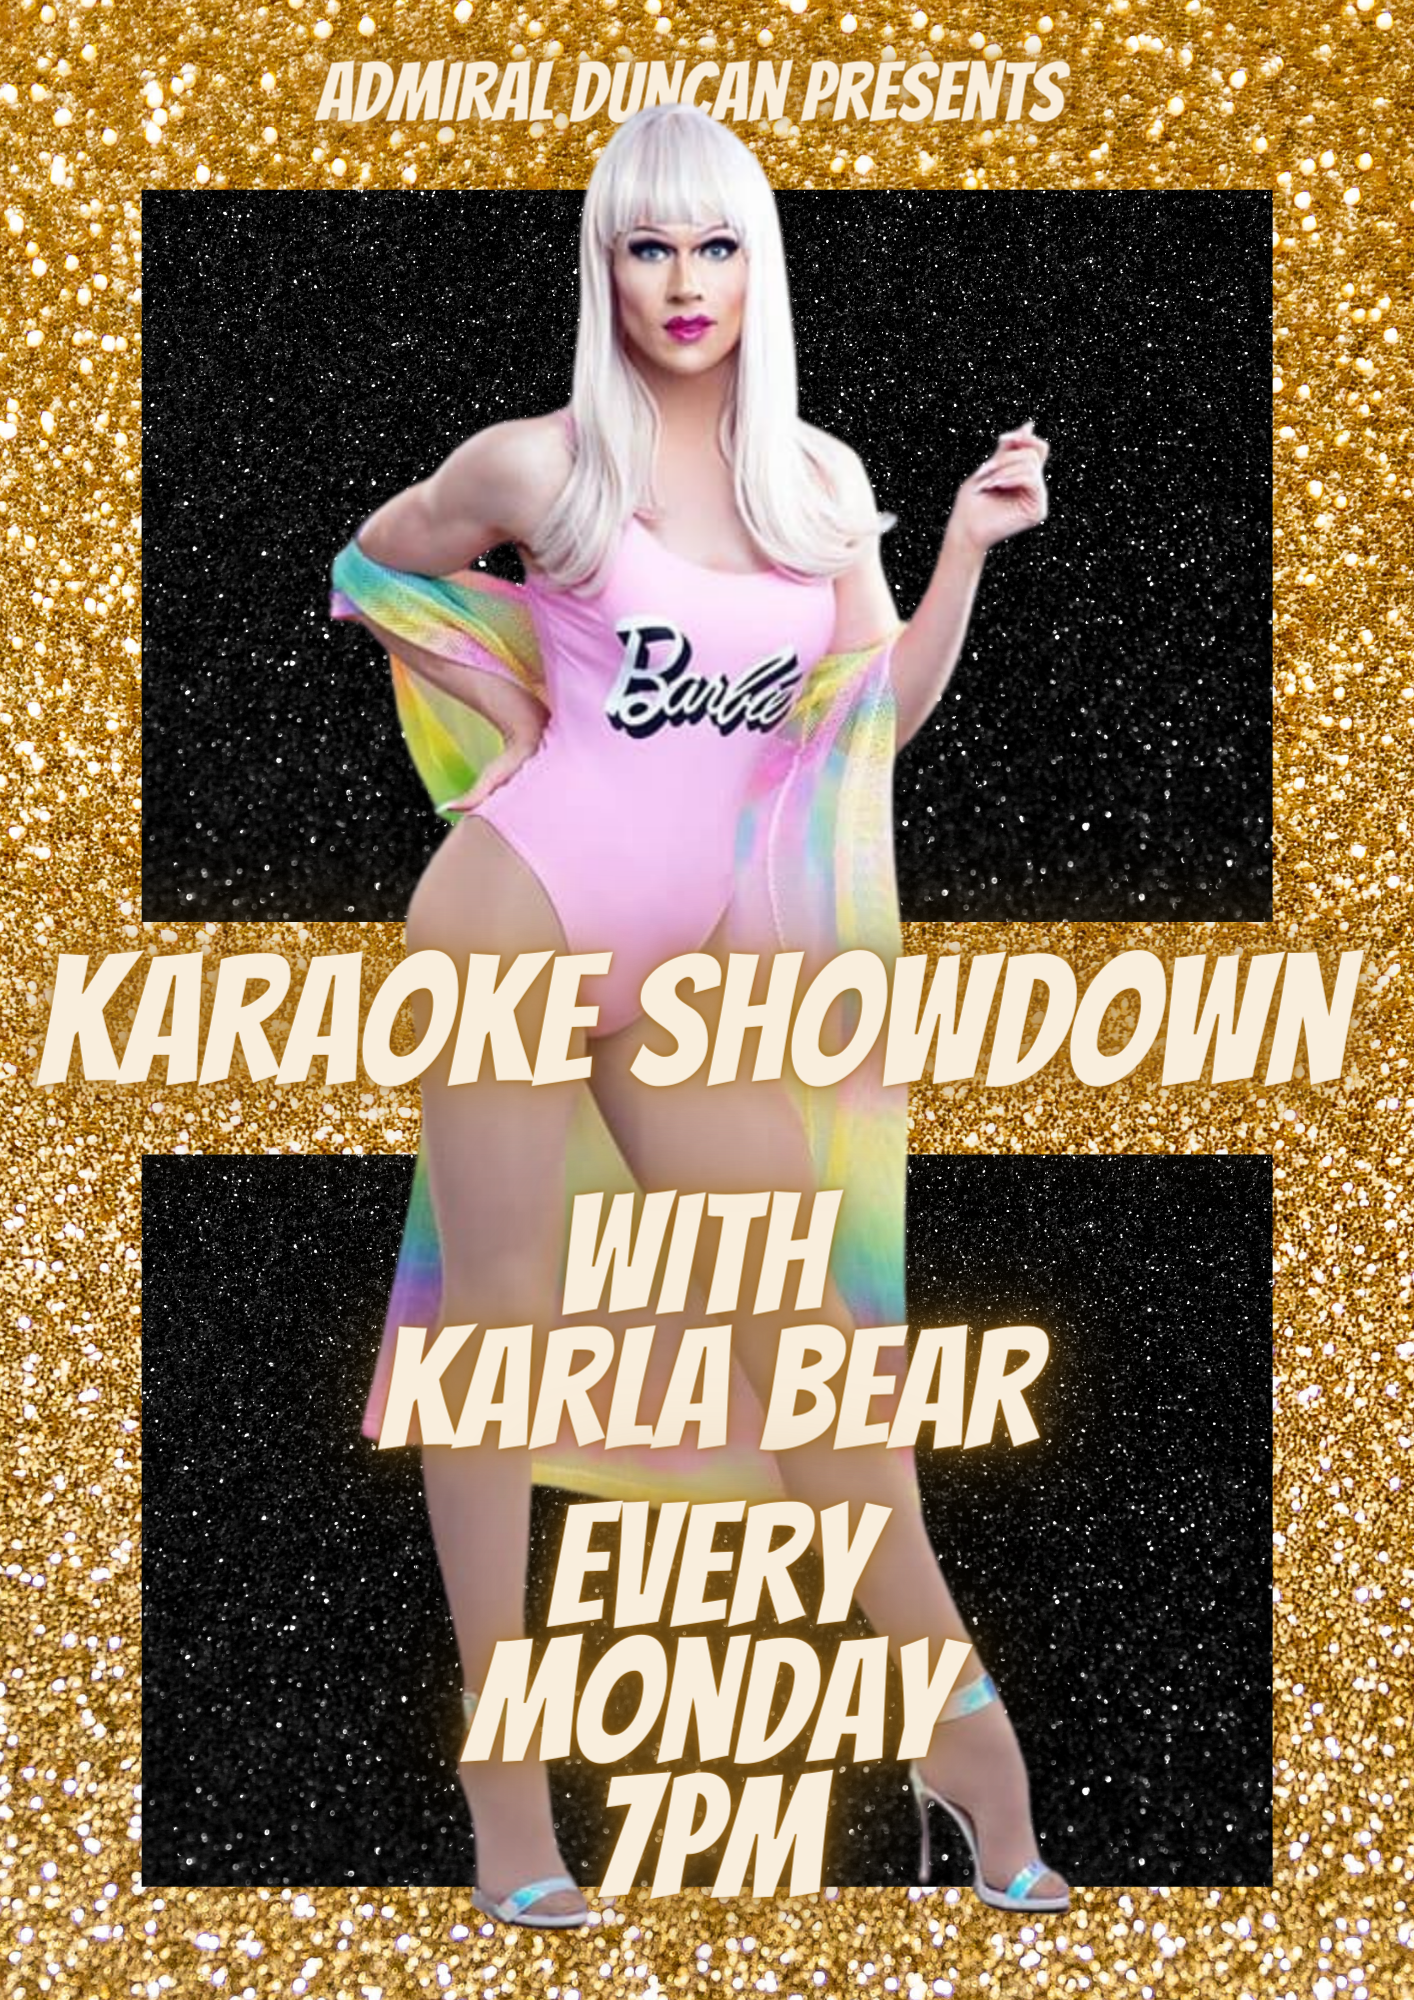 Karaoke Showdown with Karla Bear every Monday from 7pm